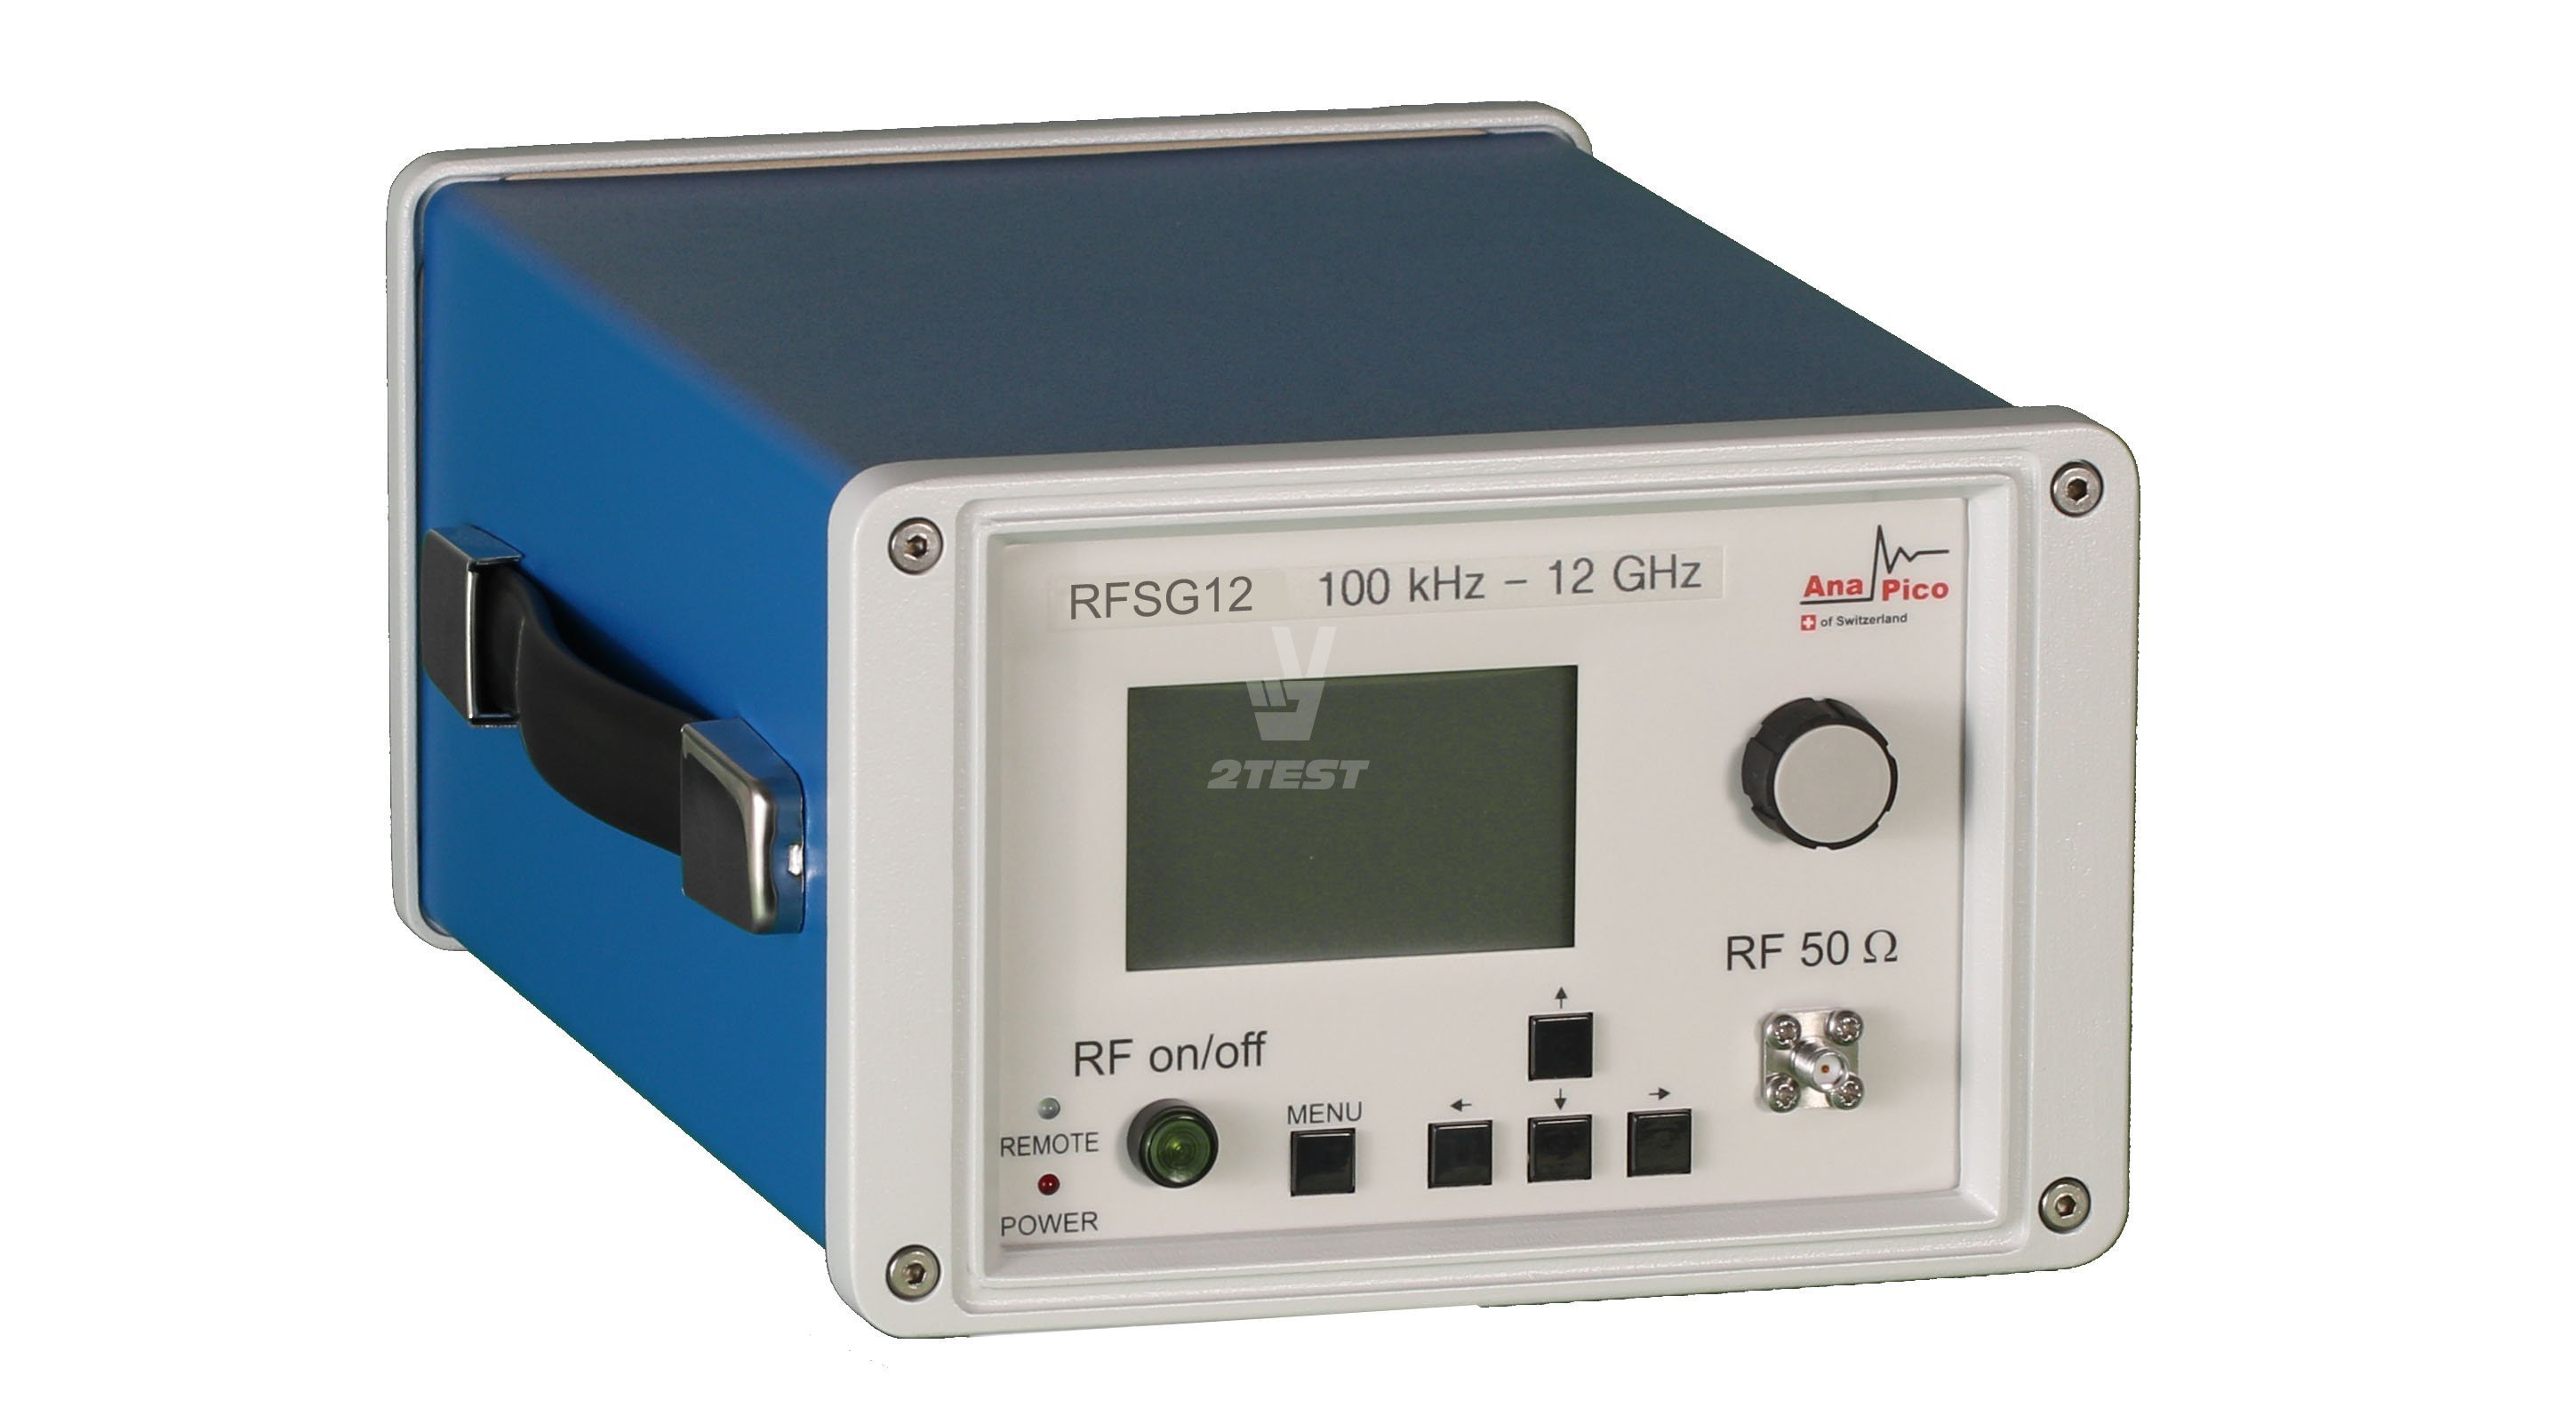 Поставка Портативные микроволновые генераторы сигналов Anapico RFSG12, RFSG20, RFSG26